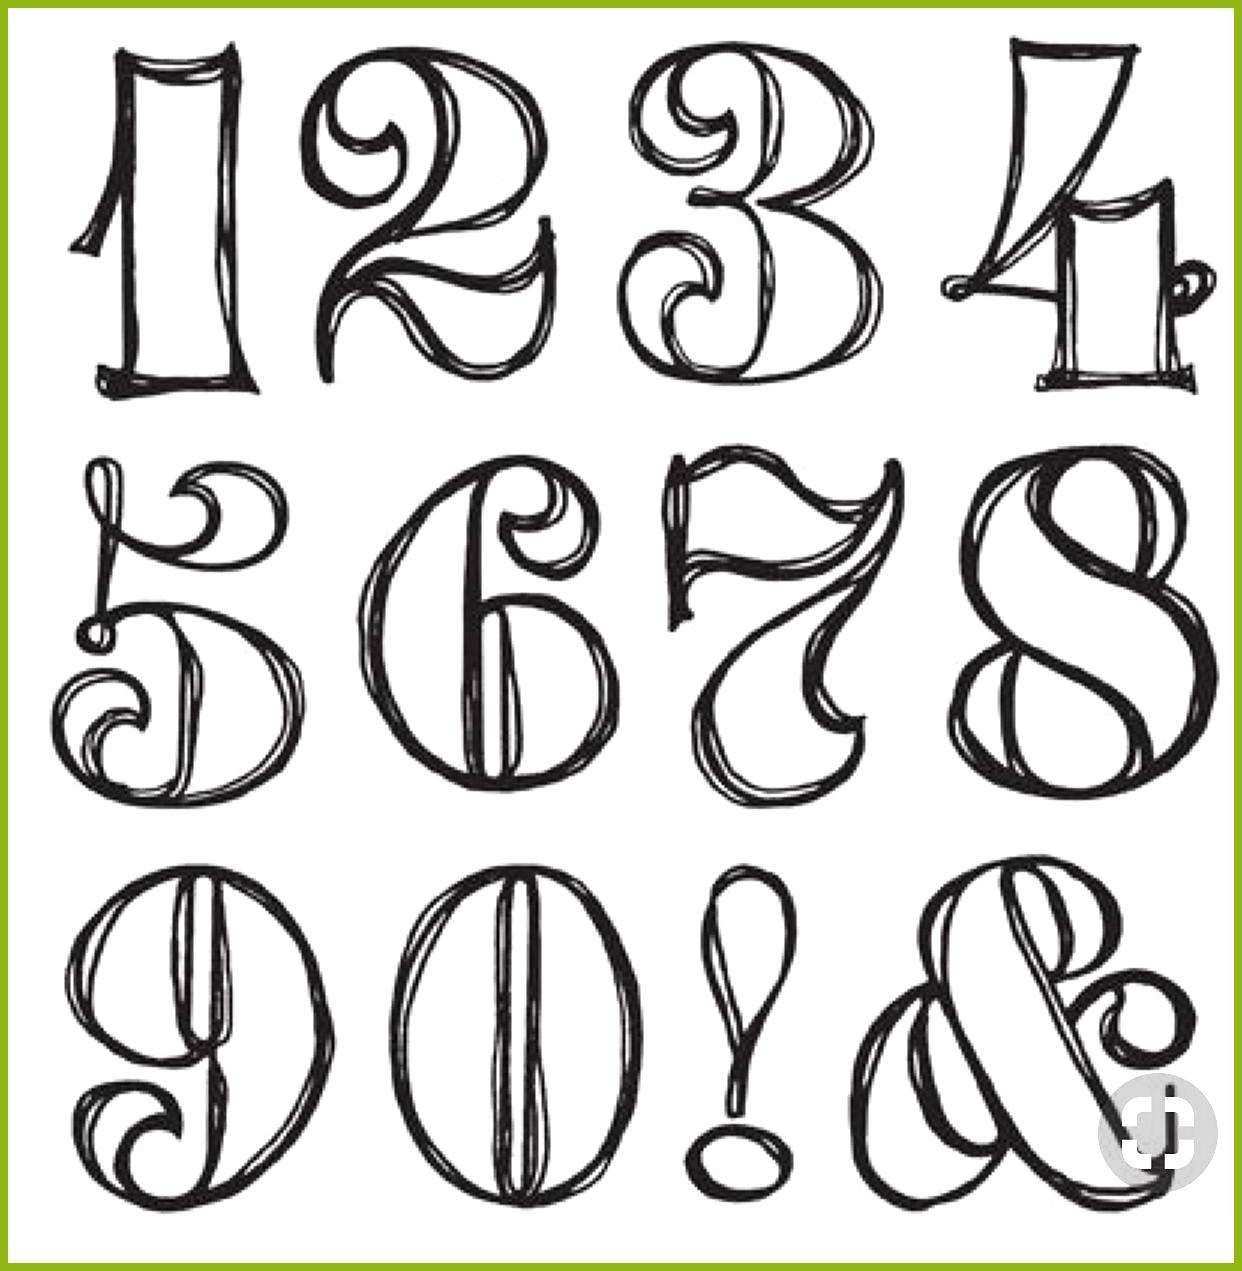 Zahlen Tattoofontscursivebold Tattoofontscursivepretty Zahlen Zahlen Informationen Zu Zahlen Pin Sie Konnen Lettering Lettering Alphabet Hand Lettering